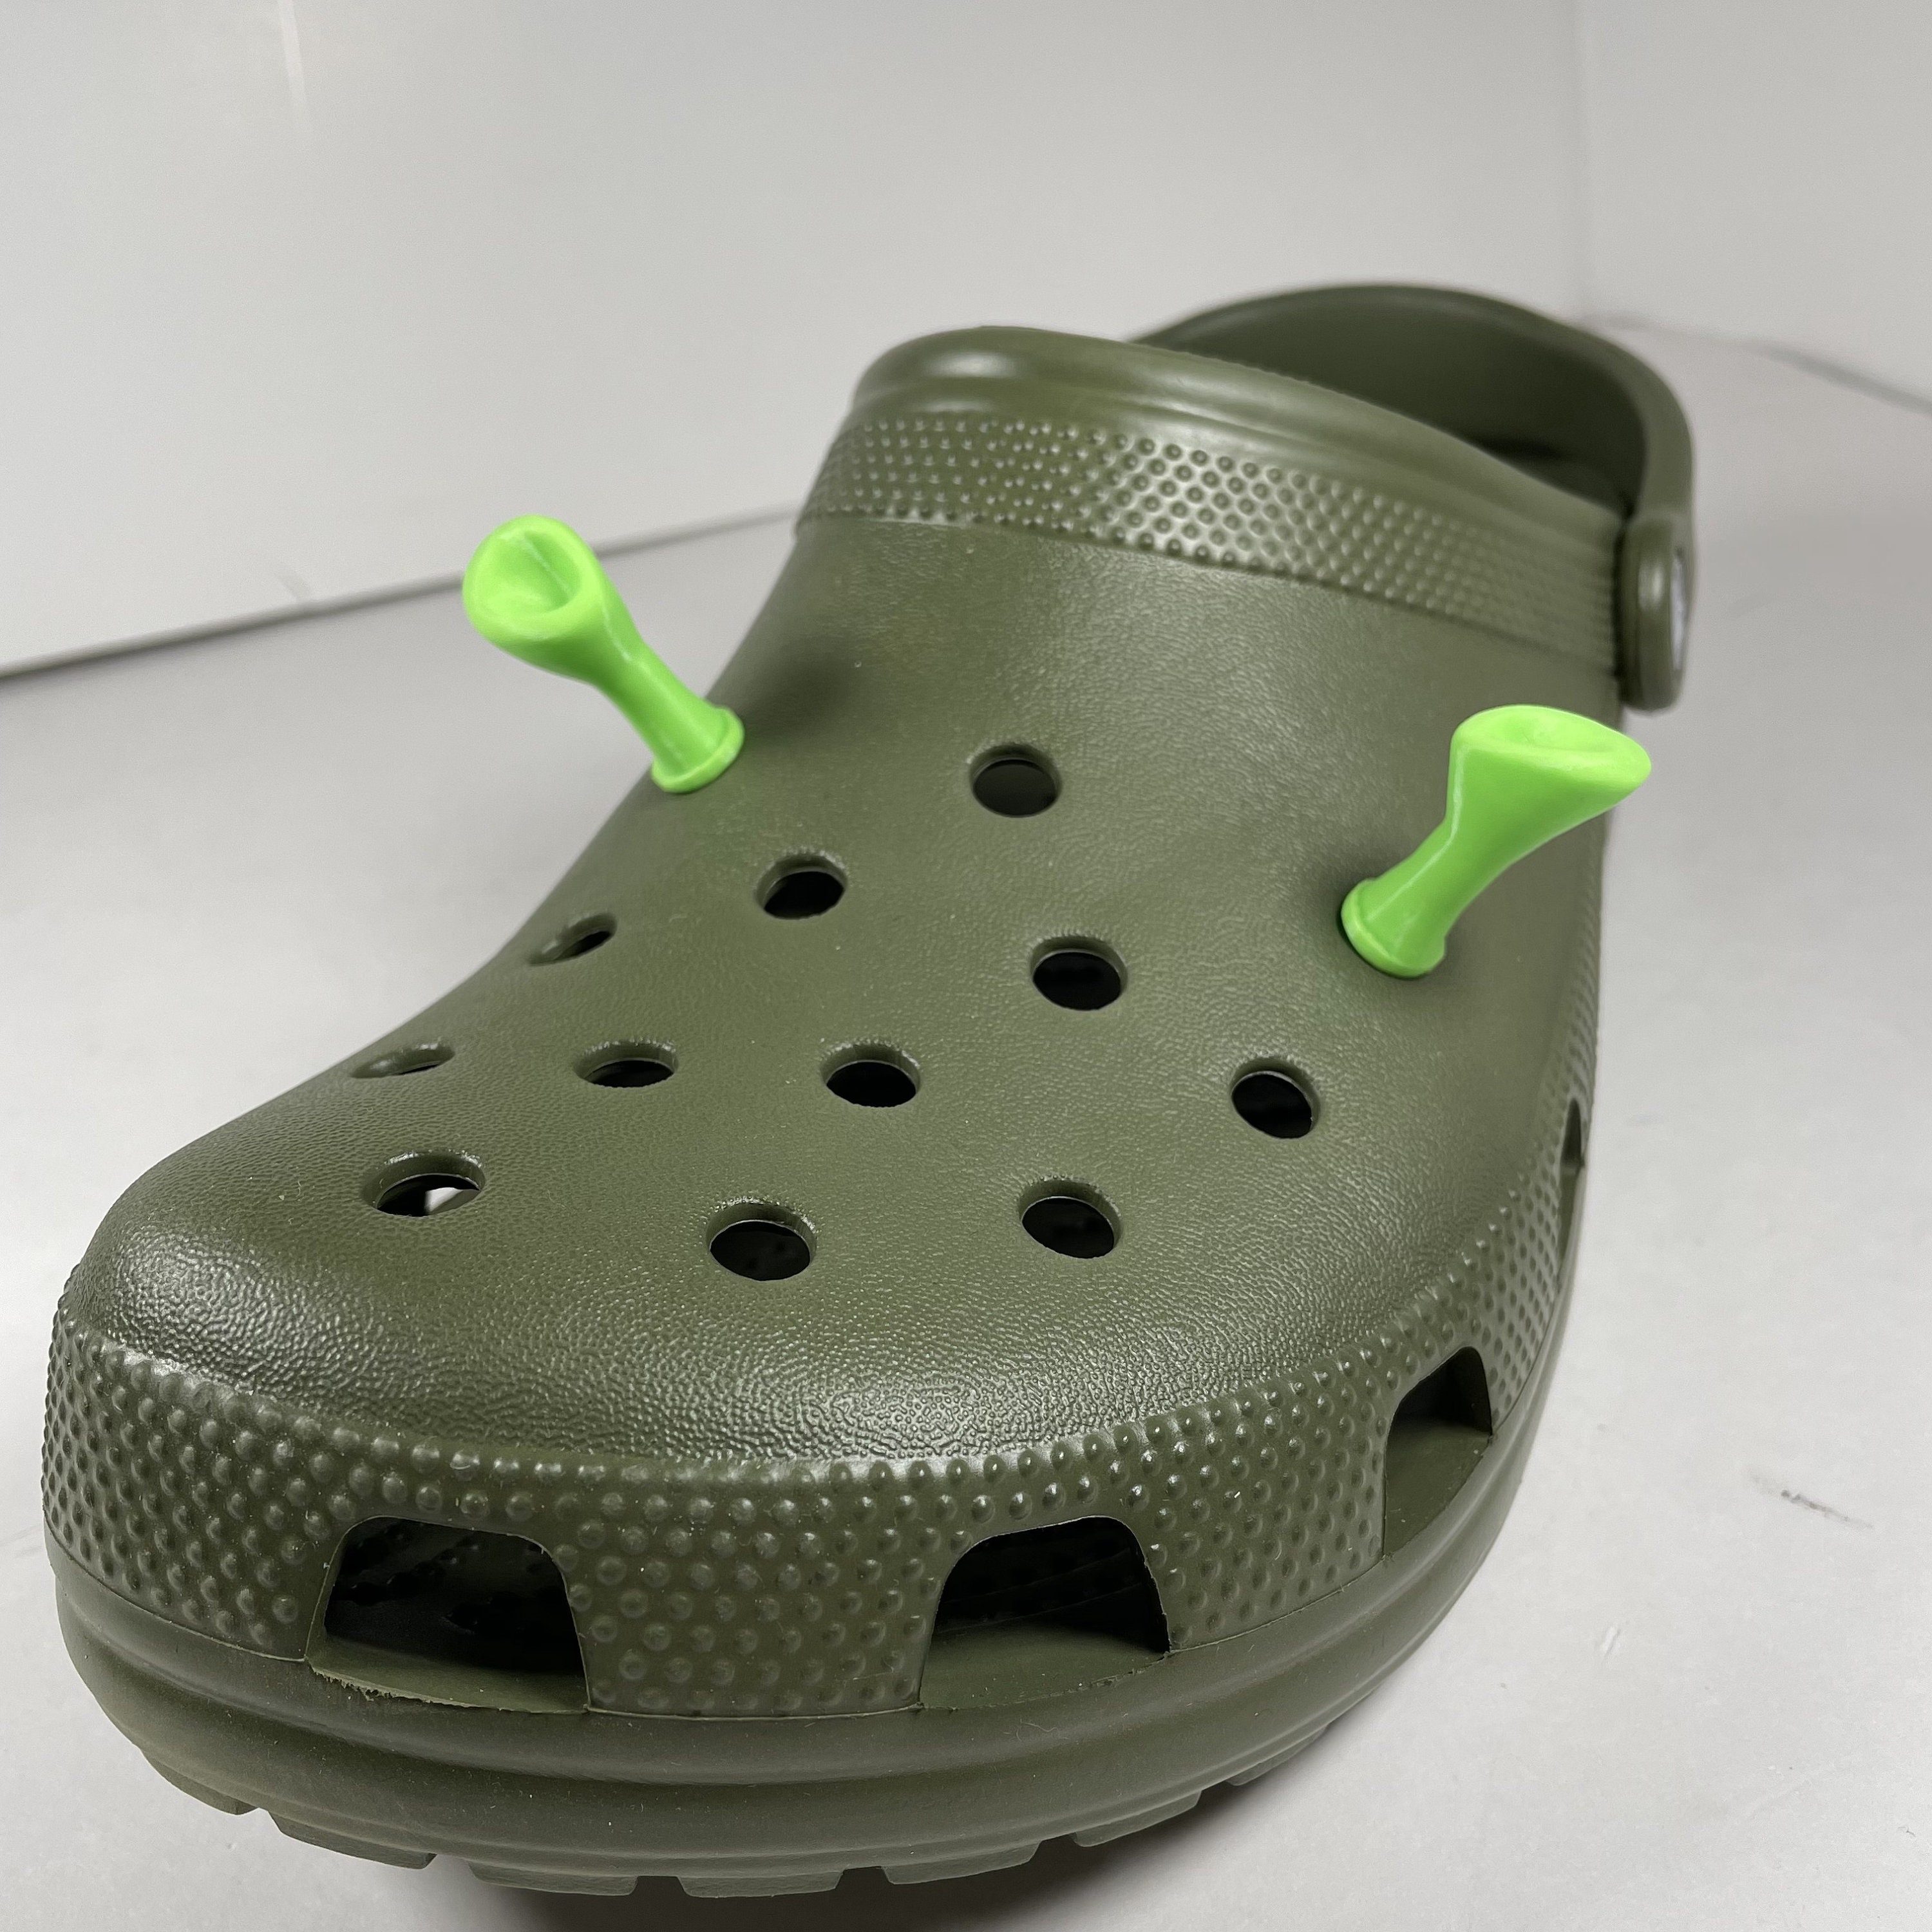 Buy Shrek Ears Crocs Charms Online in India 